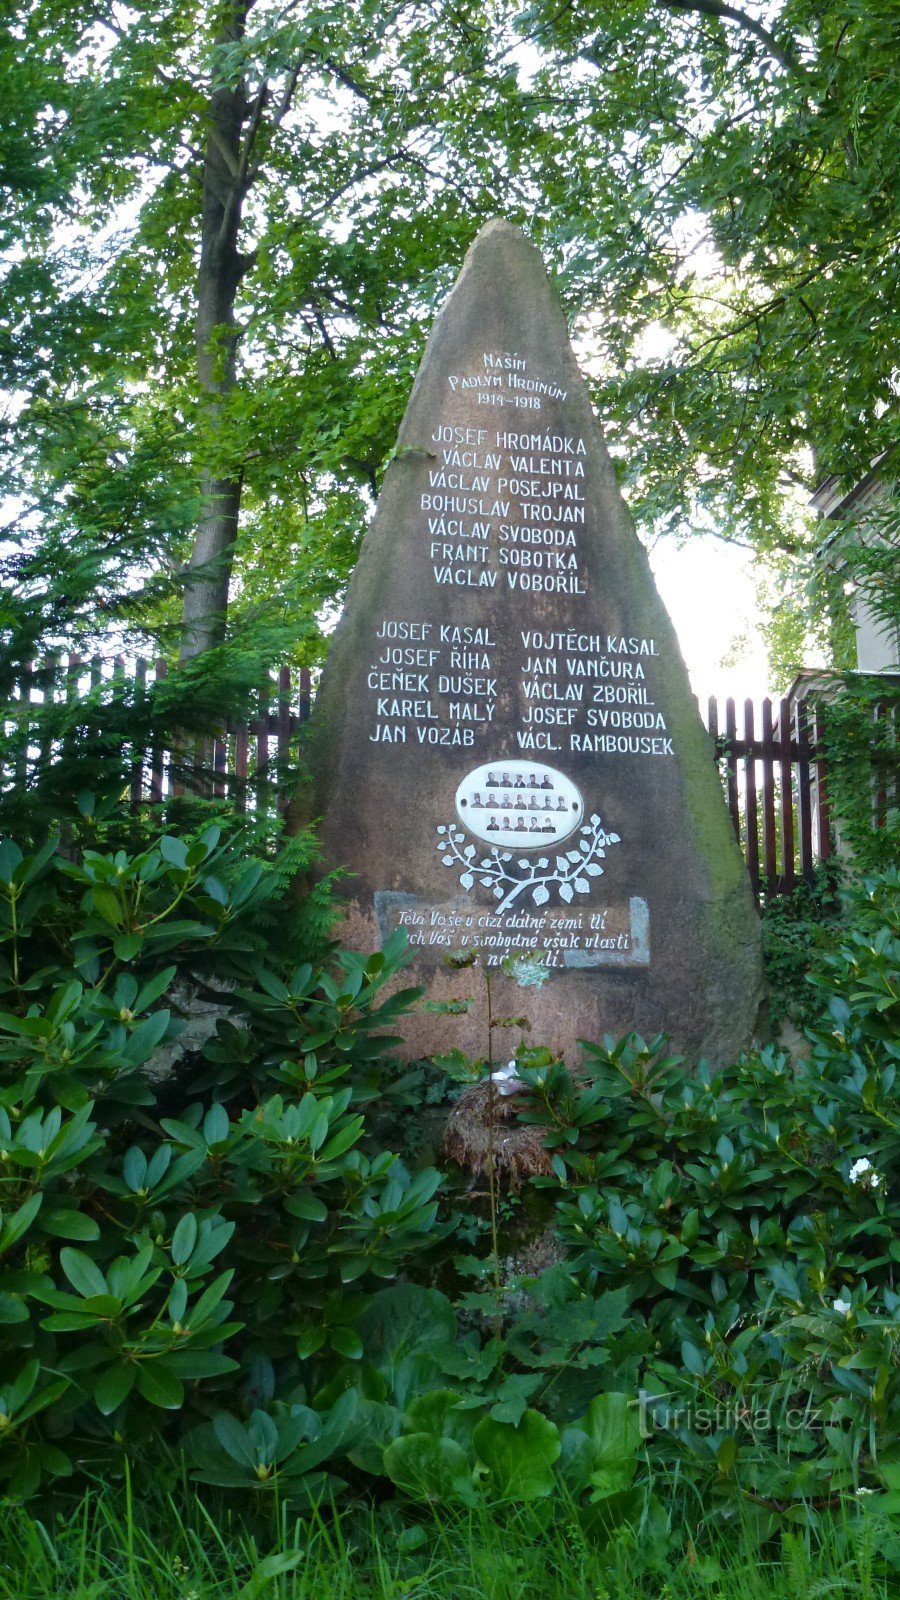 17 namn är ingraverade i monumentet